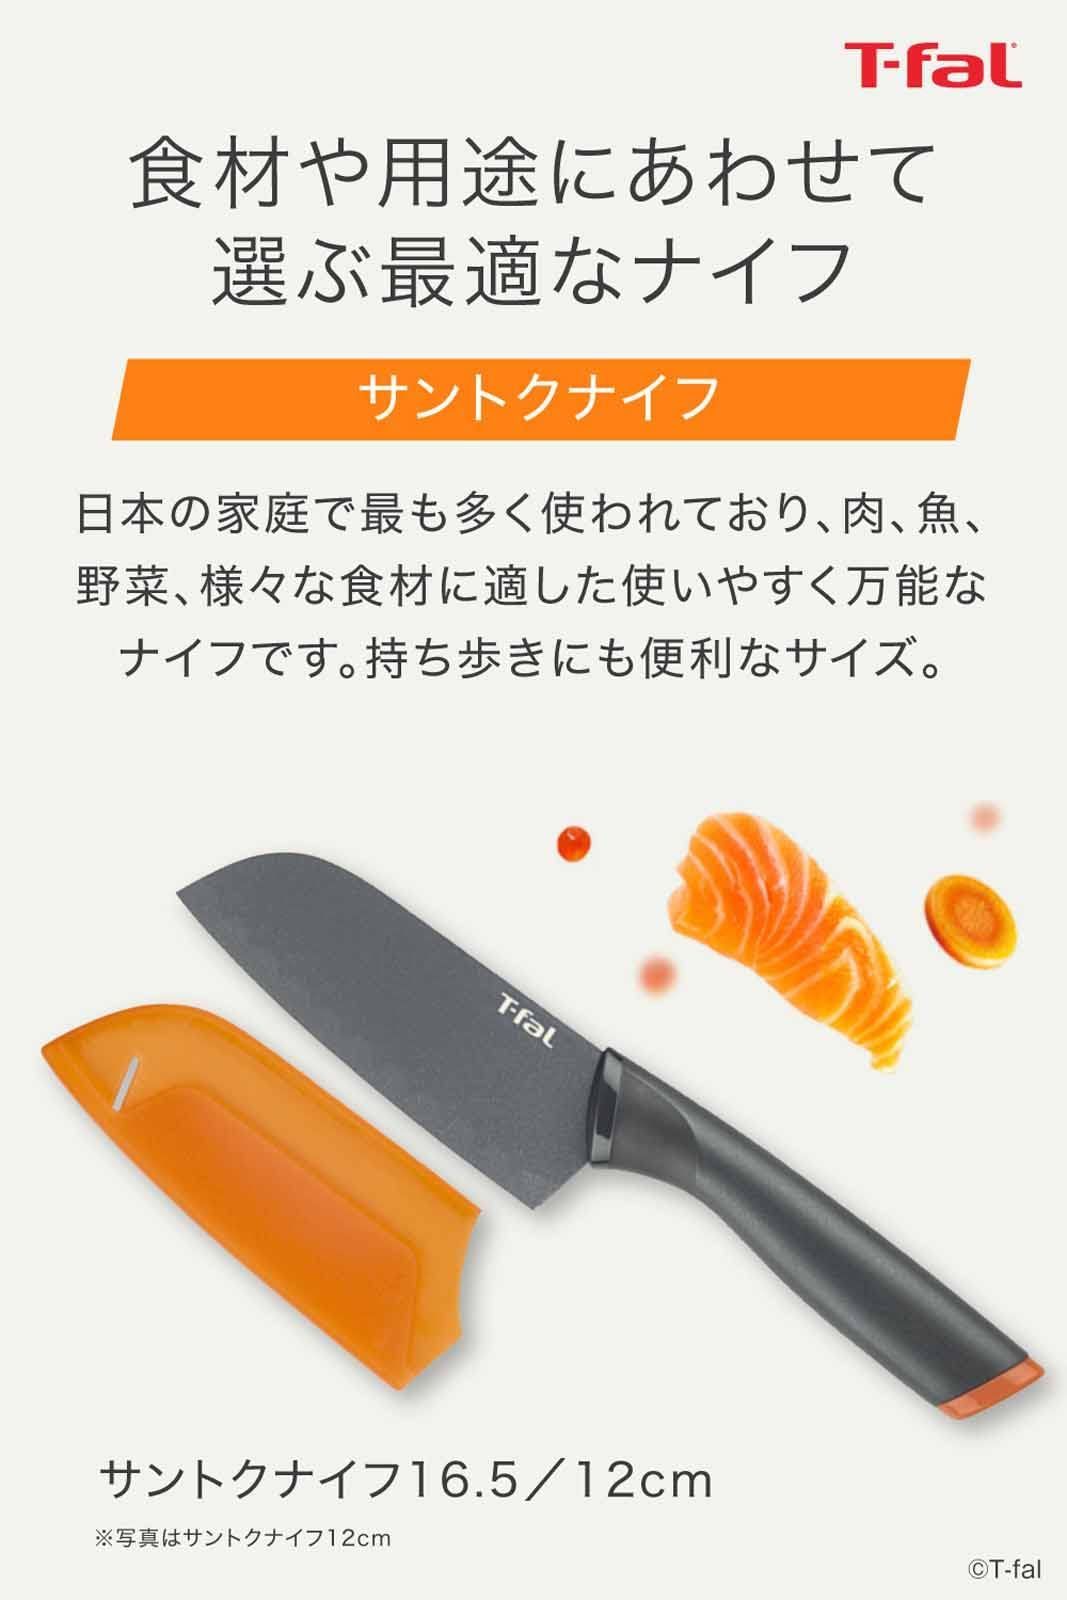 キッチンツール GSI SANTOKU ナイフセット - キッチン、台所用品